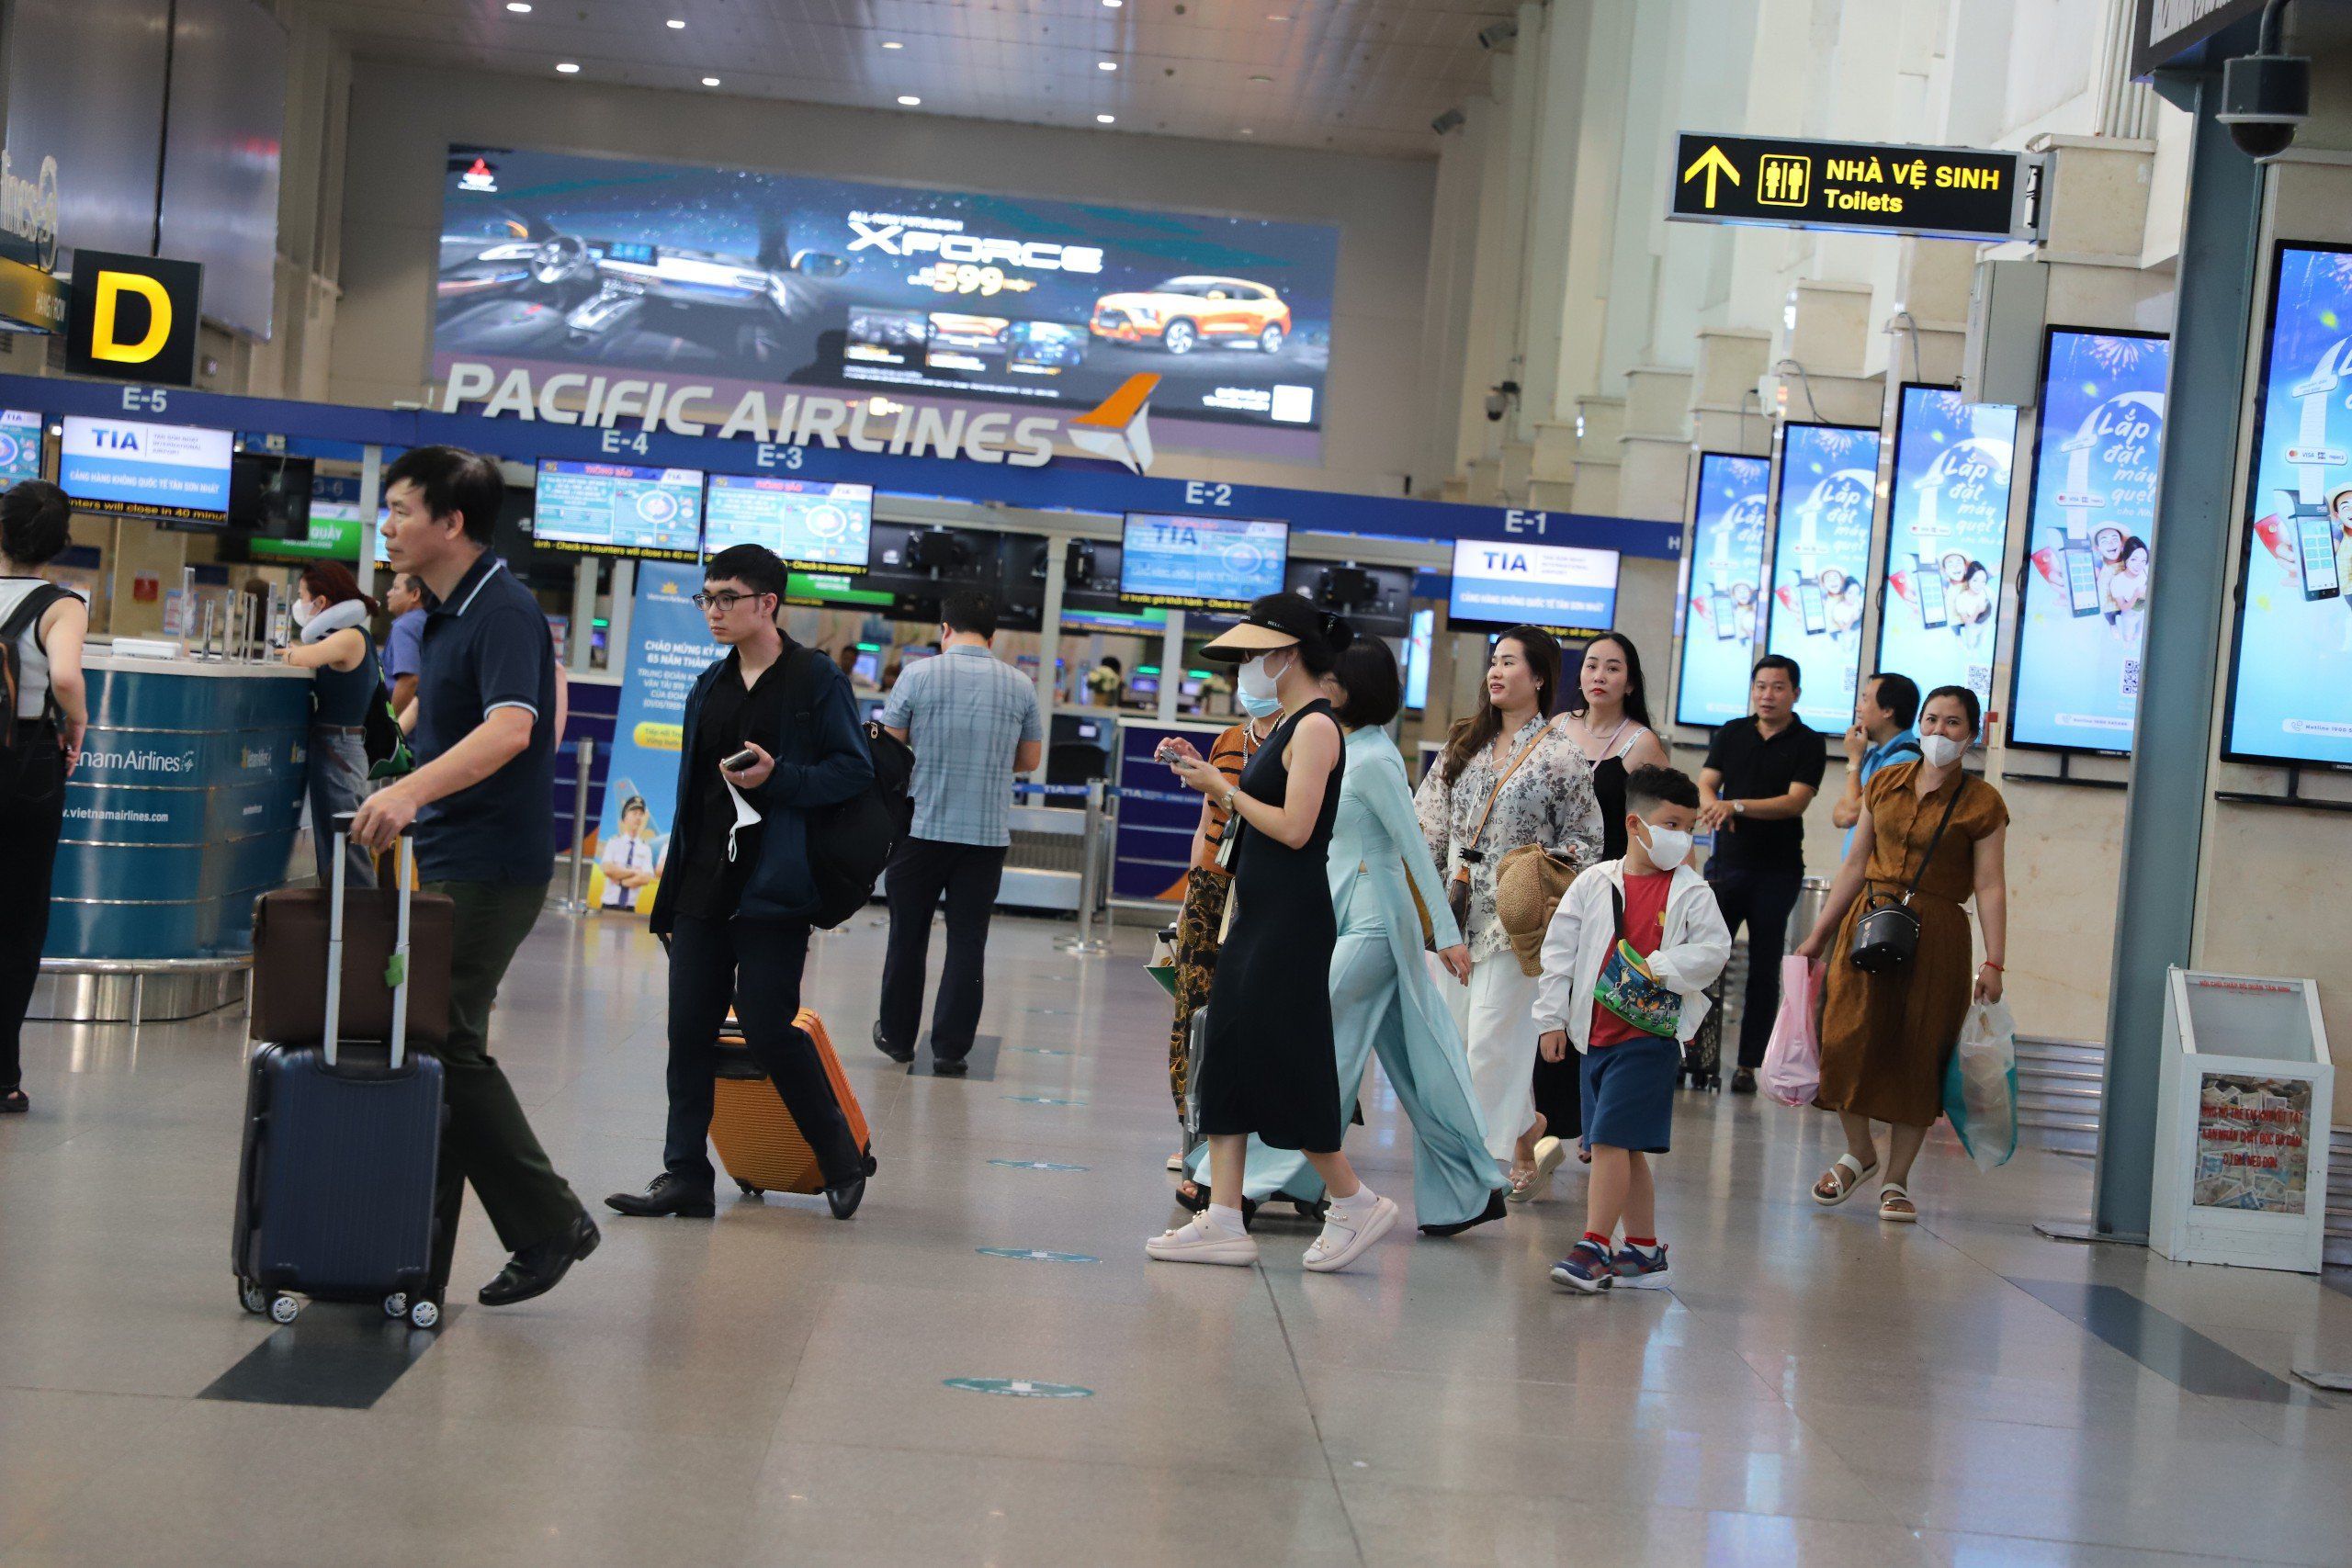 Cảng hàng không quốc tế Tân Sơn Nhất cho biết, tổng số chuyến bay giaiđoạn từ 26/4-1/5 là 4.280 chuyến bay, trong đó có 1.602 chuyến bay quốc tế, 2.678chuyến bay nội địa. Trung bình mỗi ngày là 720 chuyến.Riêng ngày cao điểm là 26/4 và 1/5, sân bay dự kiến đón và phục vụ 740 chuyếnbay. Với tổng số khách khoảng 686.718 hành khách, trung bình ngày đón 115.000-120.000 khách/ngày, ngày cao điểm có thể đón 125.000 hành khách/ngày